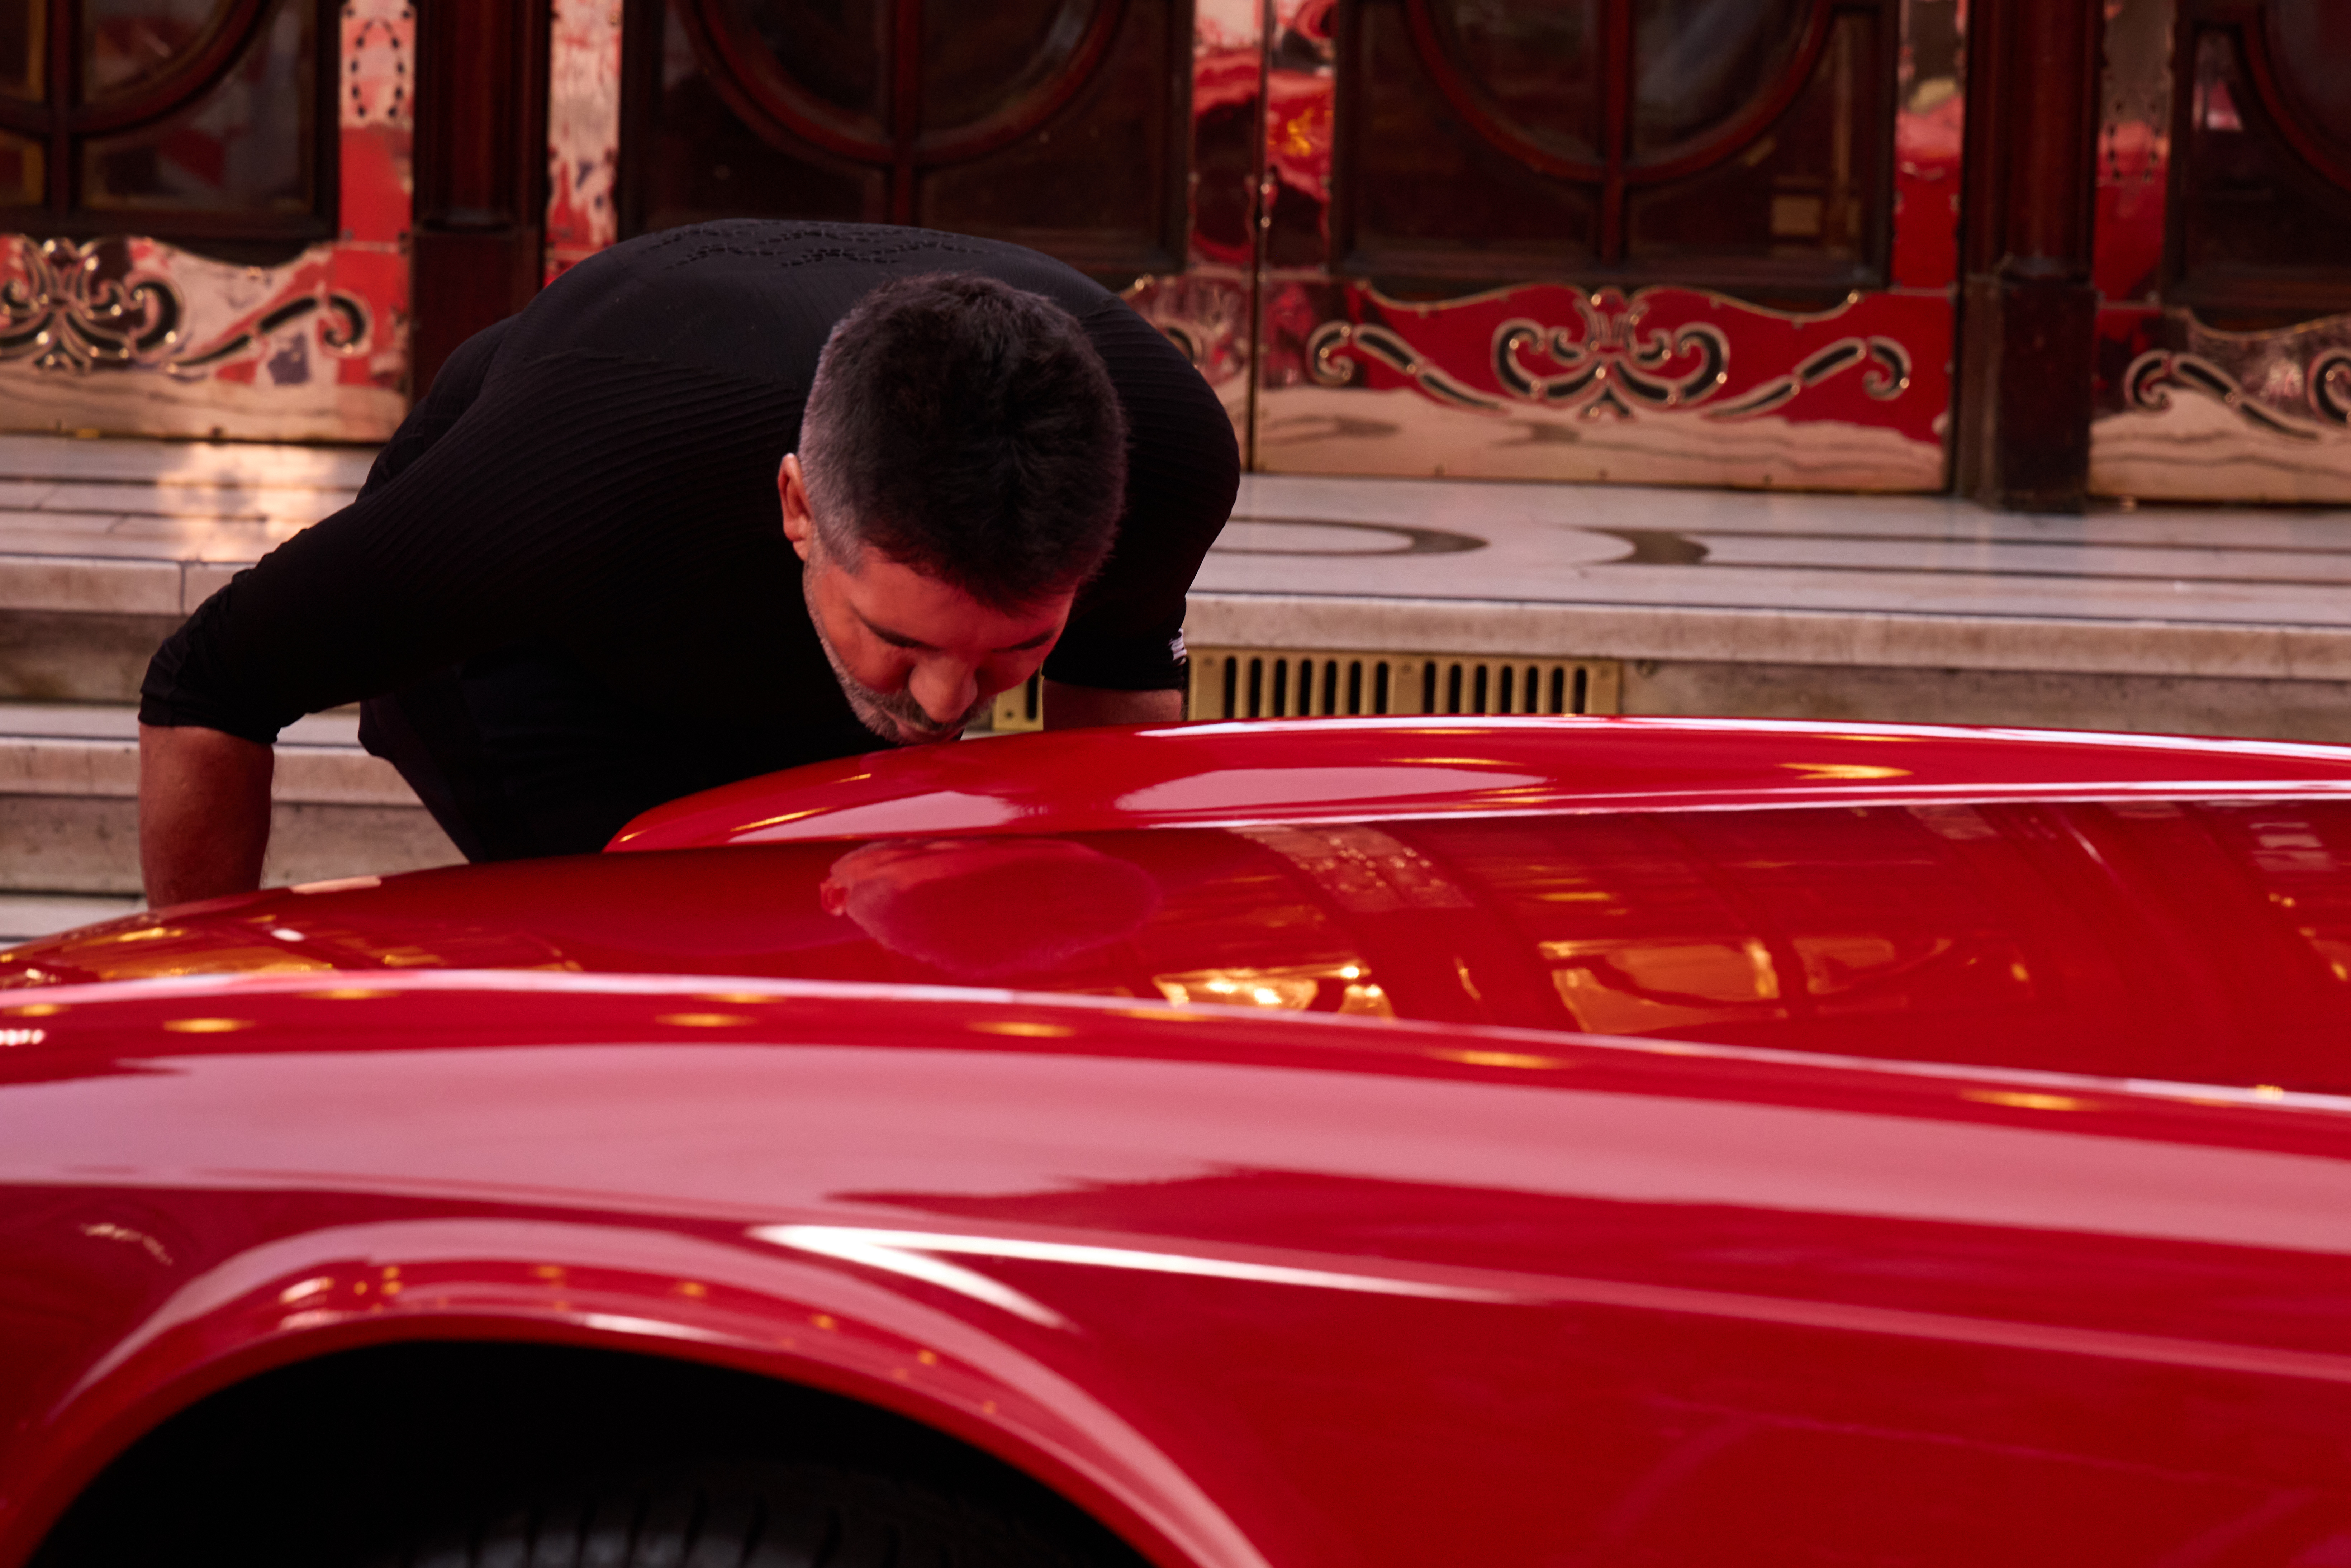 Simon wird vor dem Palladium wieder mit dem Auto vereint und ist so aufgedreht, dass er einen Klatscher auf die Motorhaube schlägt